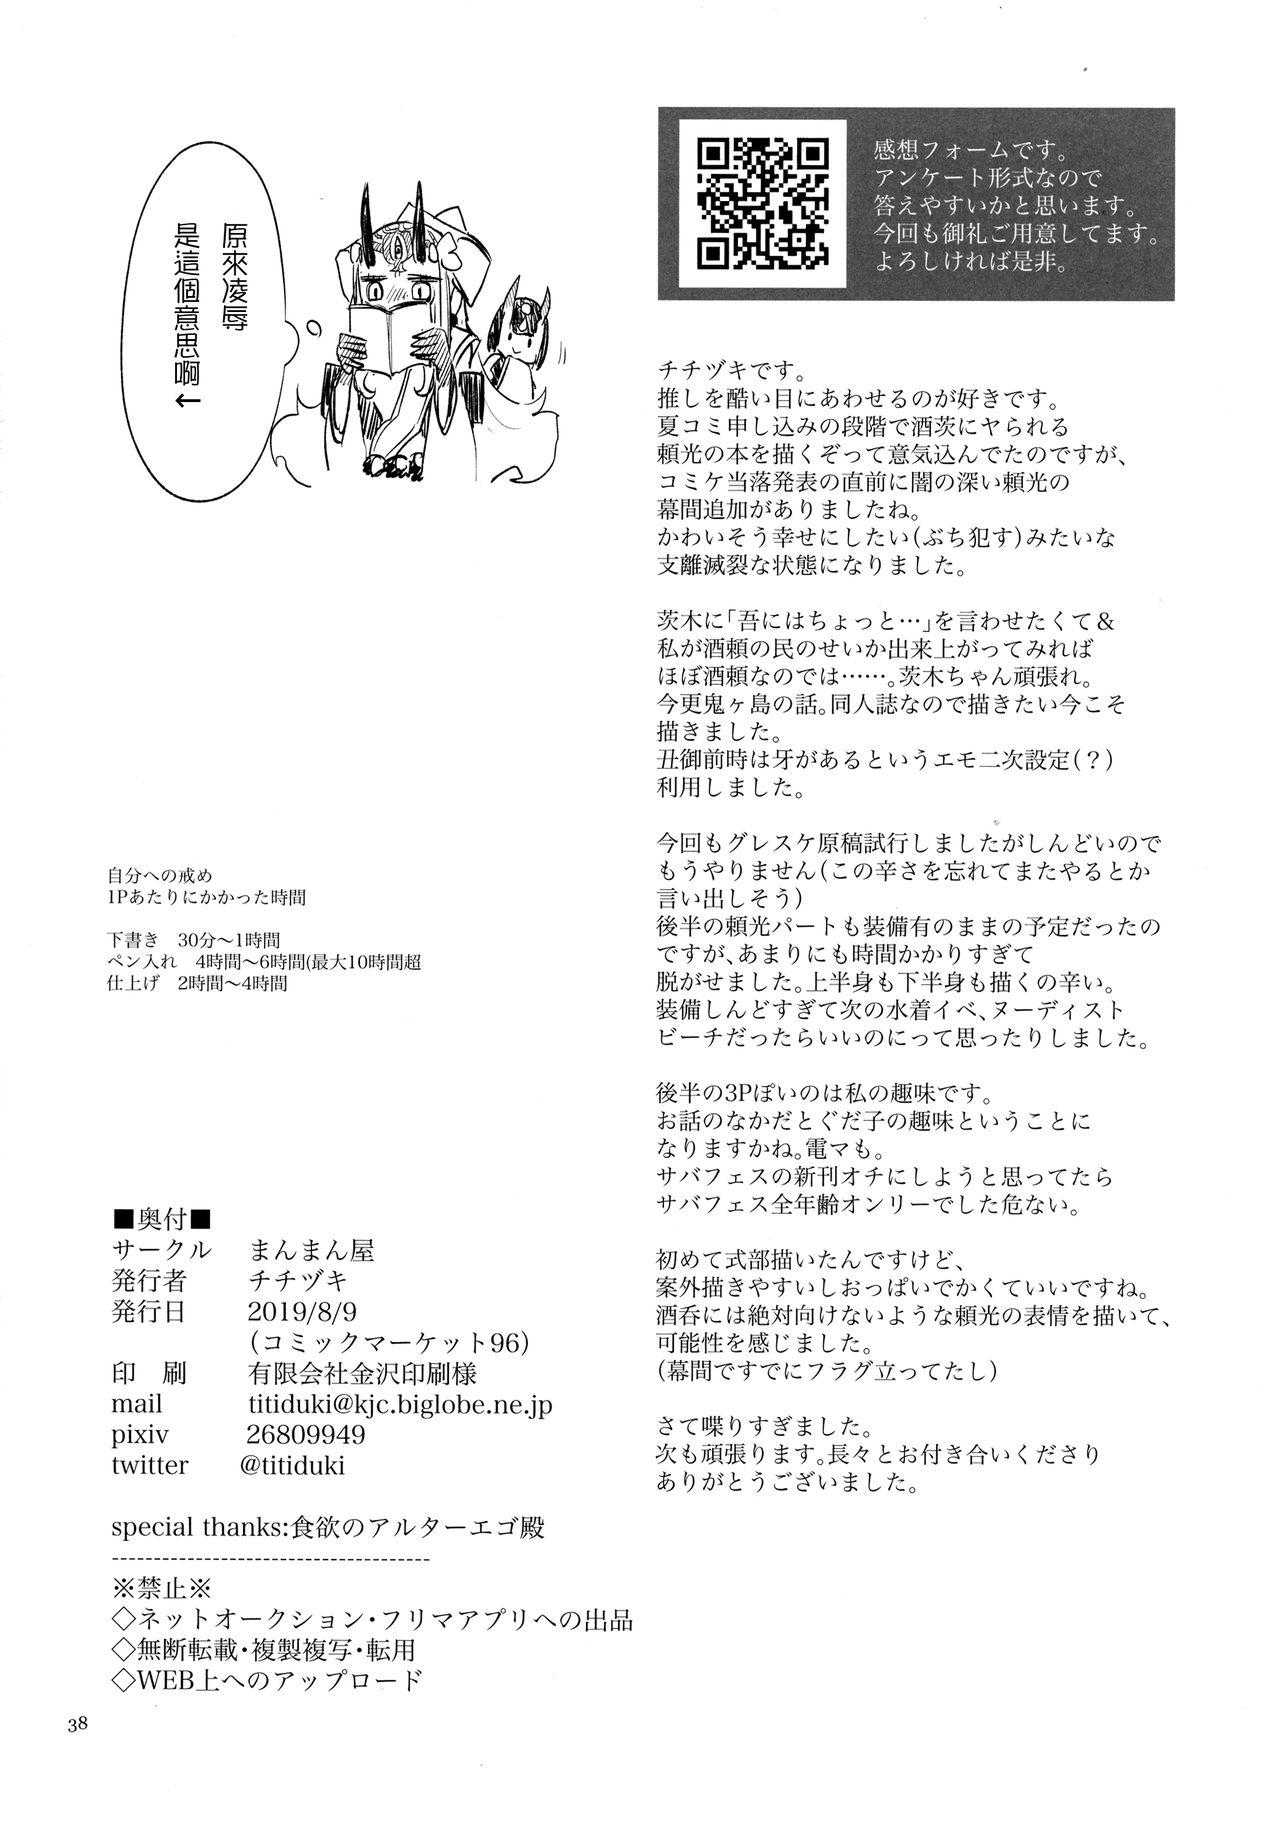 Gapes Gaping Asshole Onigashima Oni Taiji - Fate grand order Imvu - Page 38